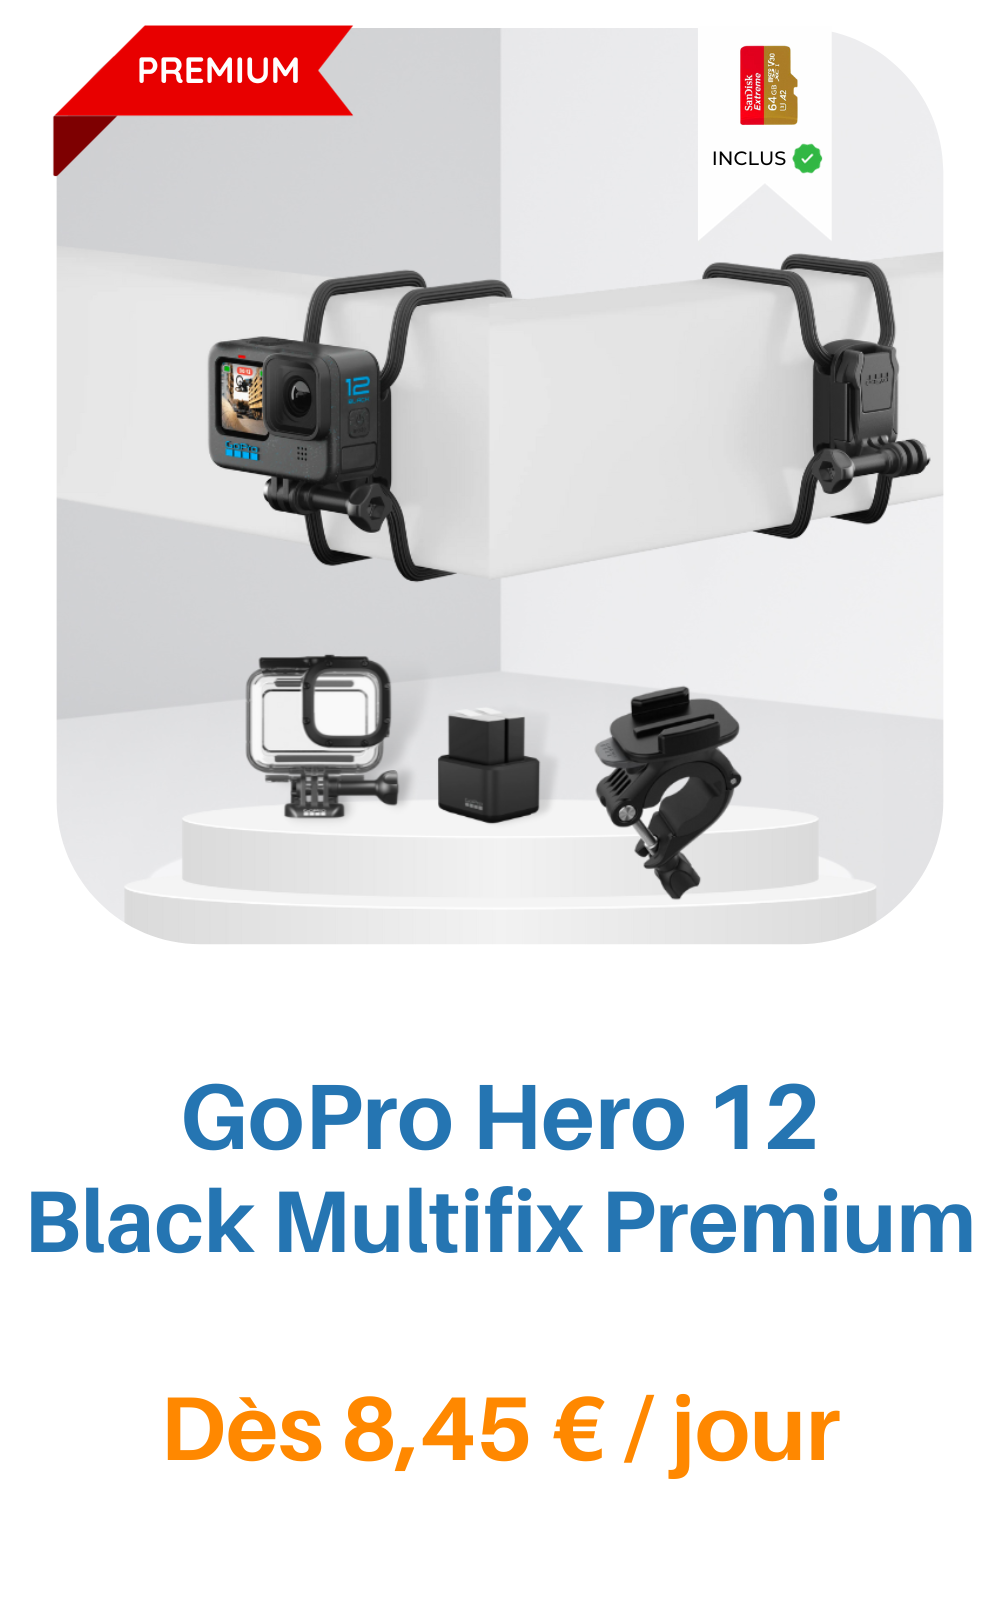 Louez un(e) Gopro hero 10 + Access, à partir de 22,50 € chez